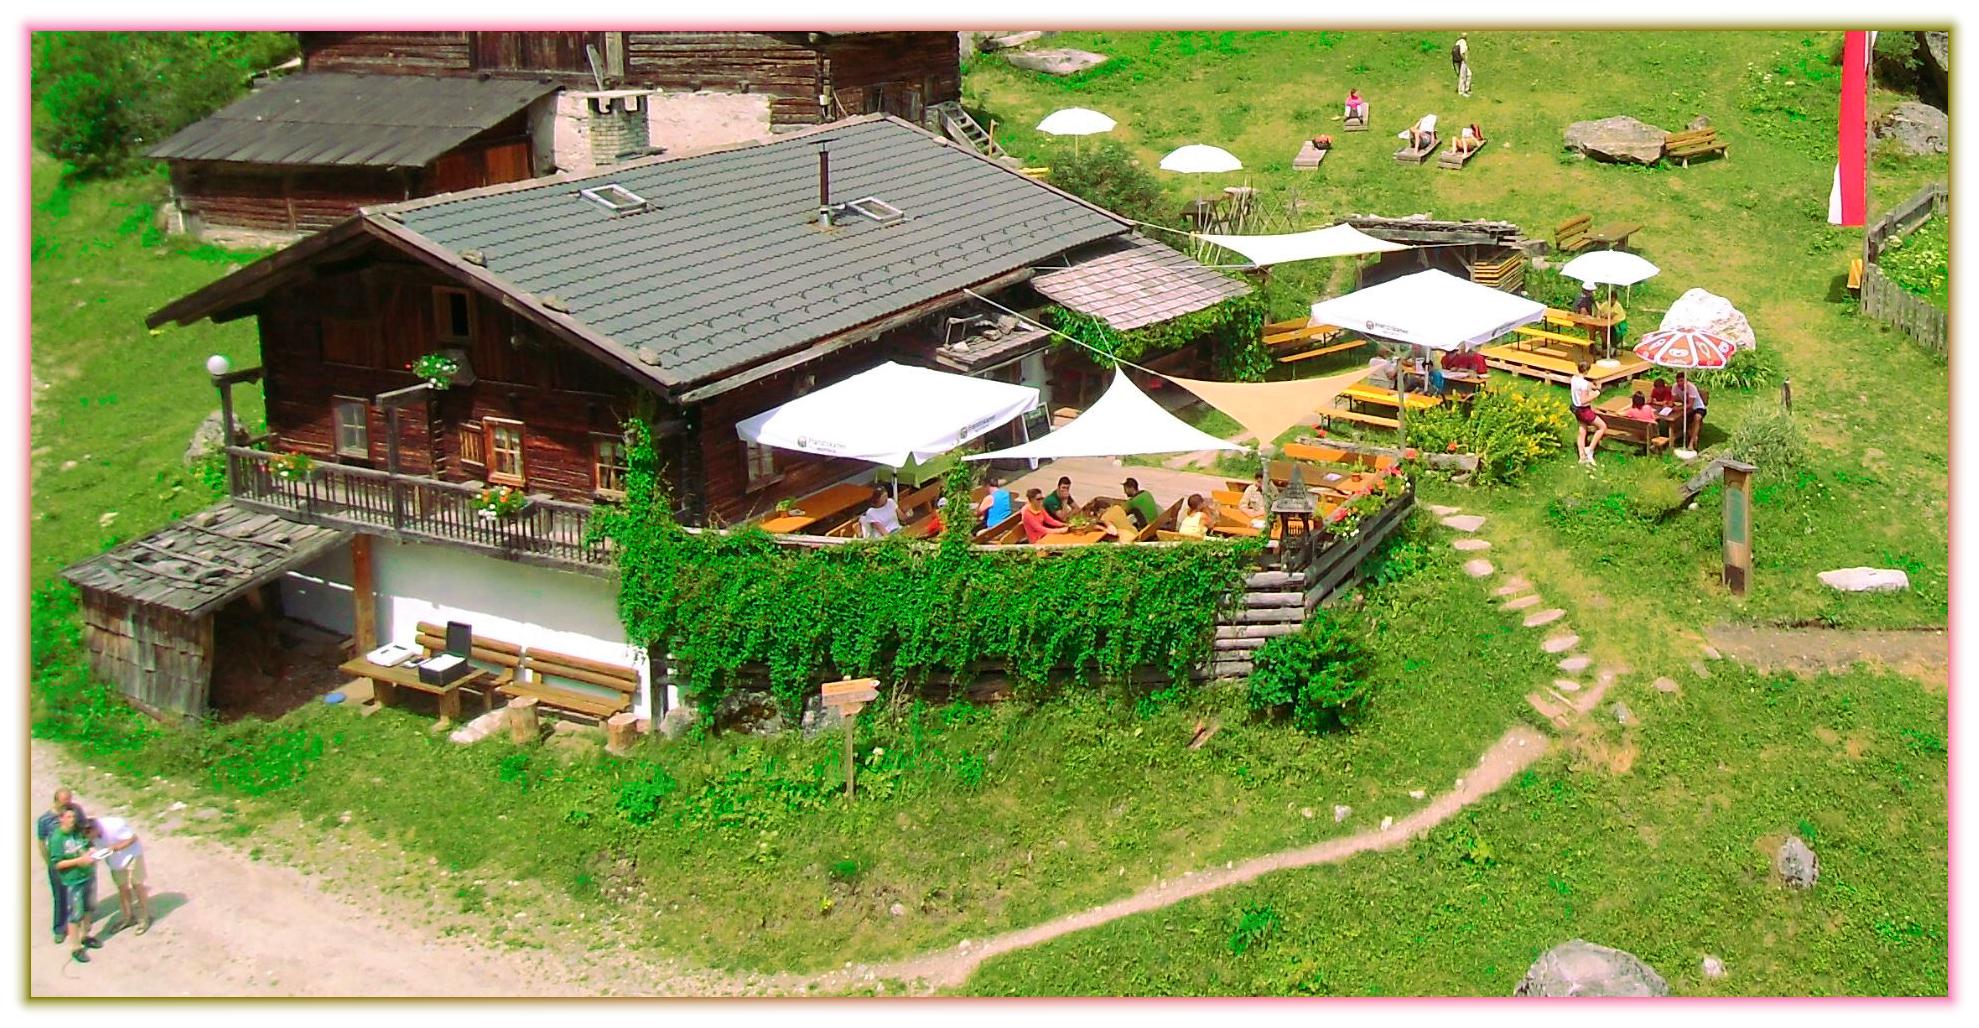 Alm - Hütte in Luttach im Ahrntal / Südtirol